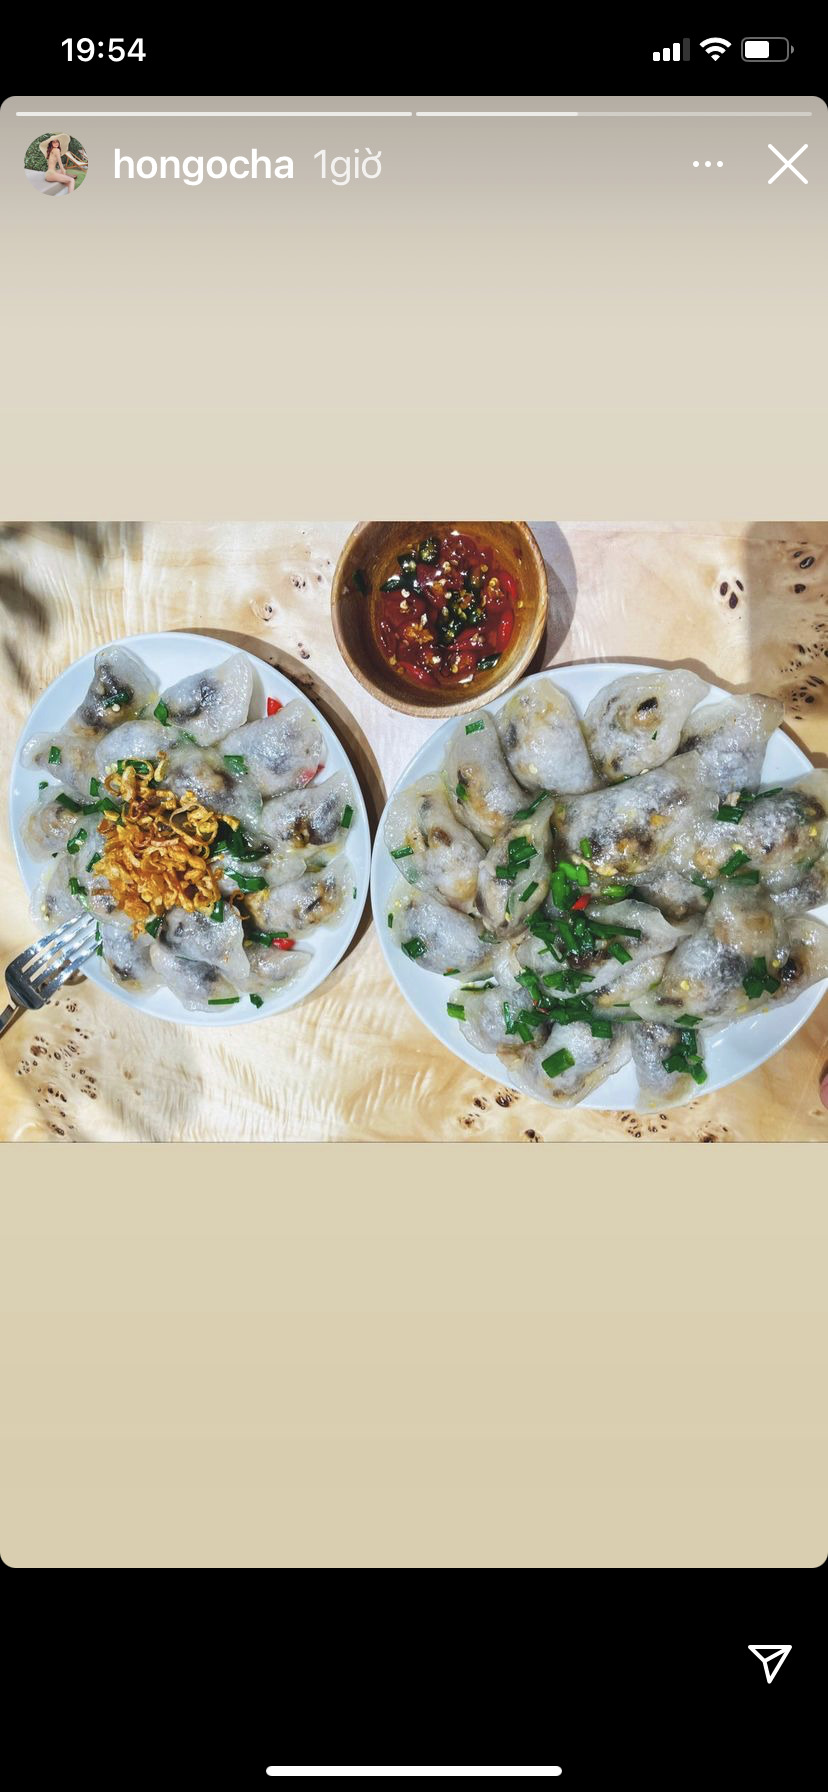 Hồ Ngọc Hà hôm nay có bữa ăn hấp dẫn với món đặc sản bánh lọc Quảng Bình quê cô.